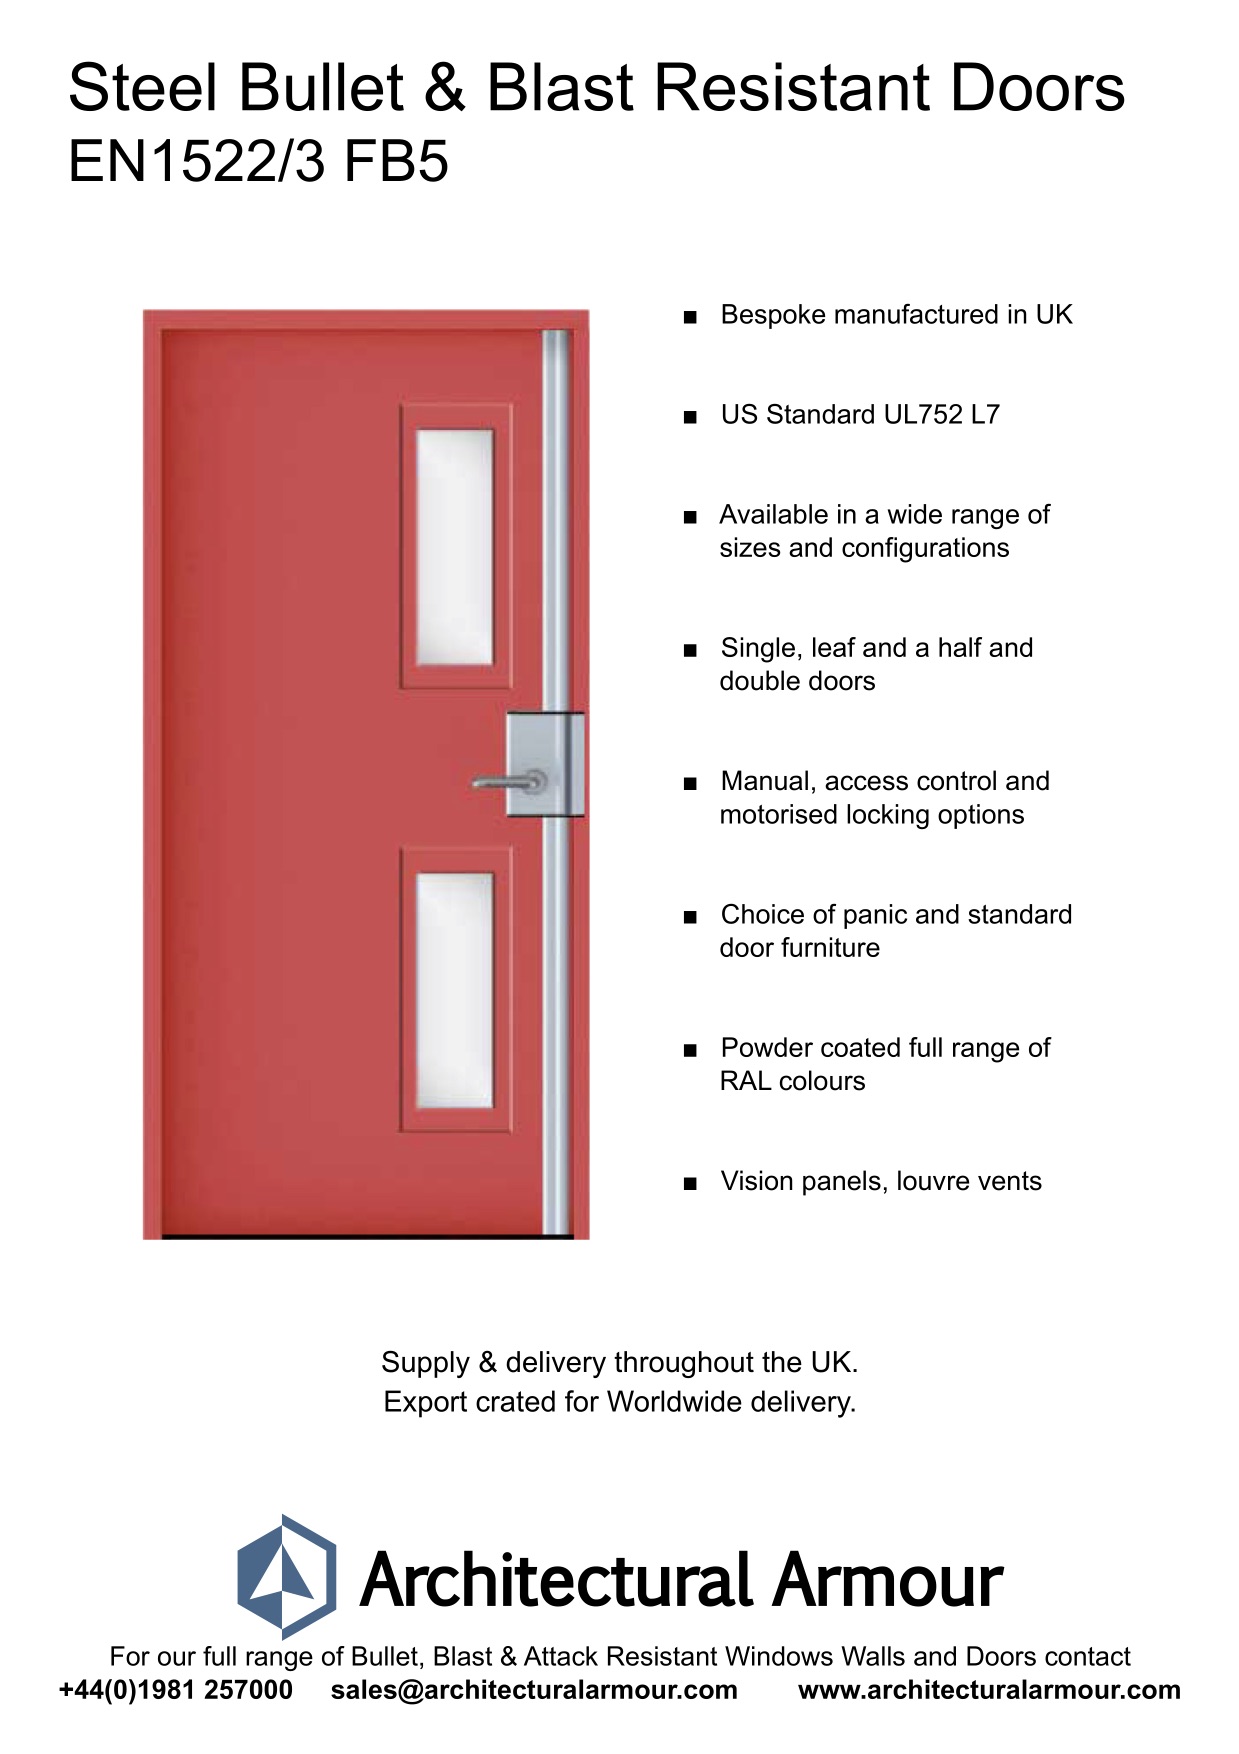 Blast-and-bulletproof-Steel-Door-Vision Panels-EN1522-3-FB5